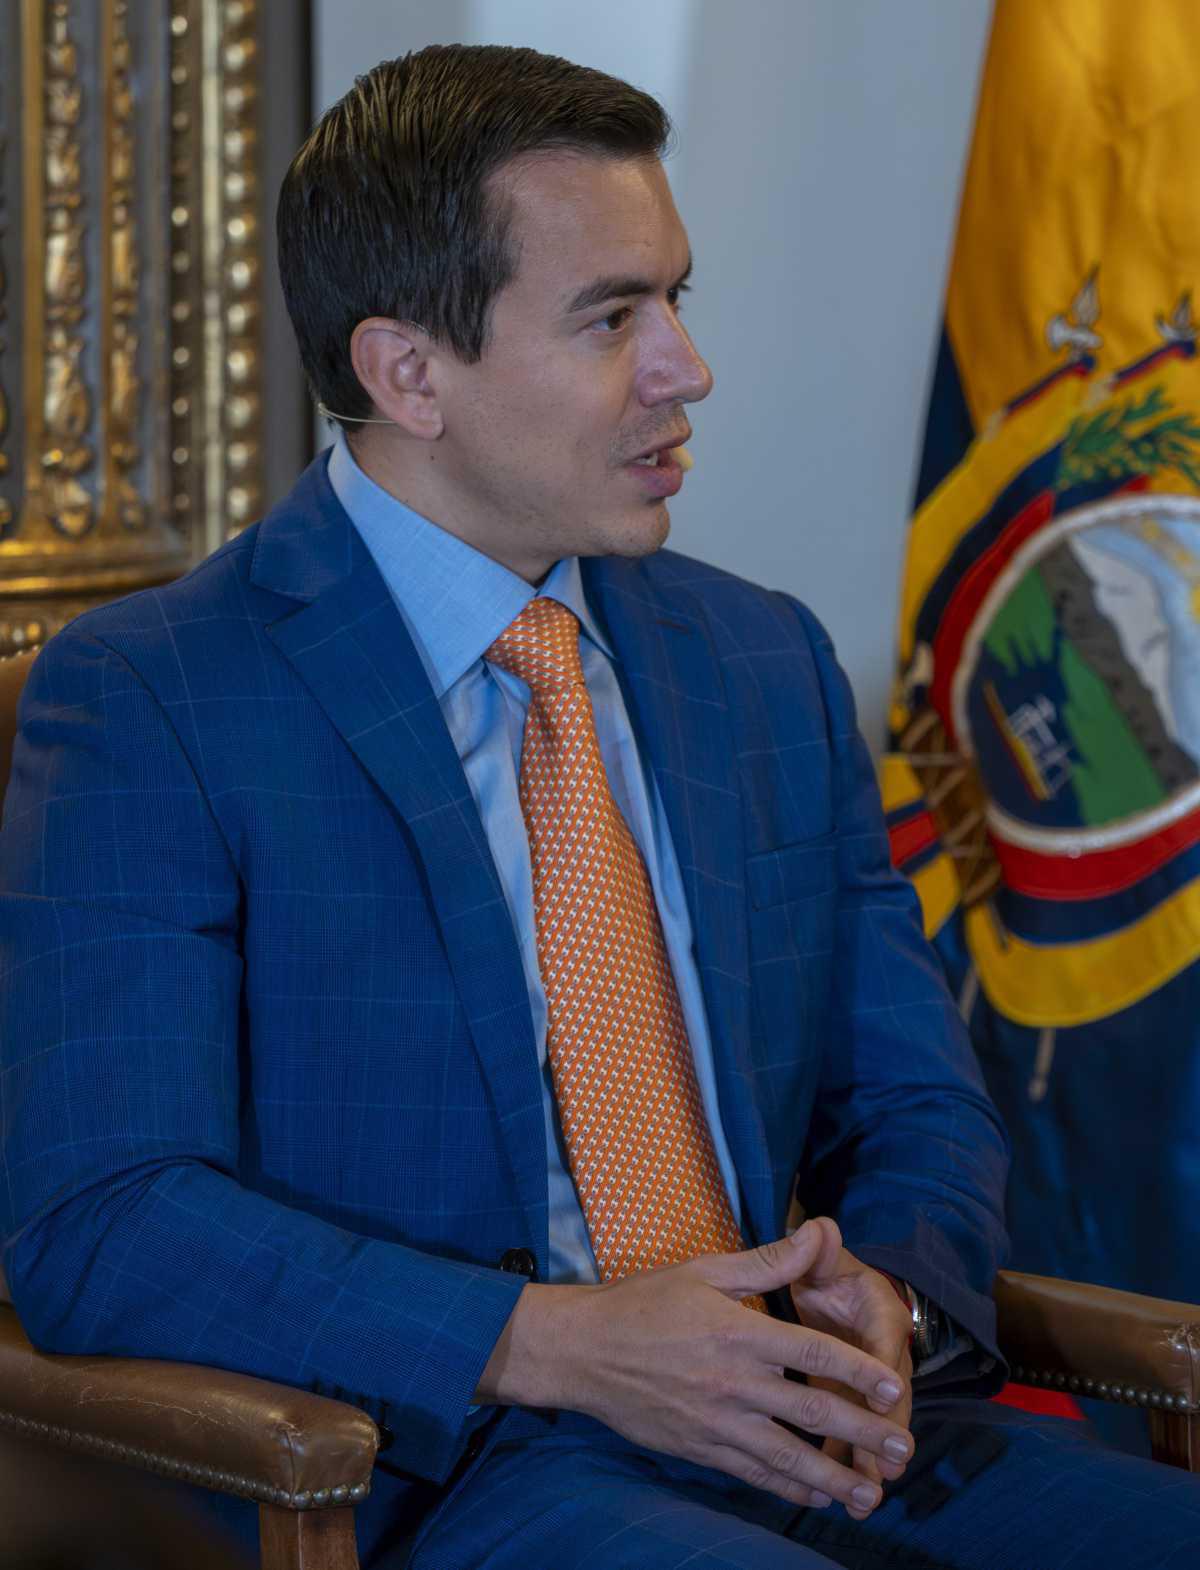 El presidente de la Republica de Ecuador Daniel Noboa Azin destaca logros de su gestión y enfrenta desafíos futuros en Casa de América